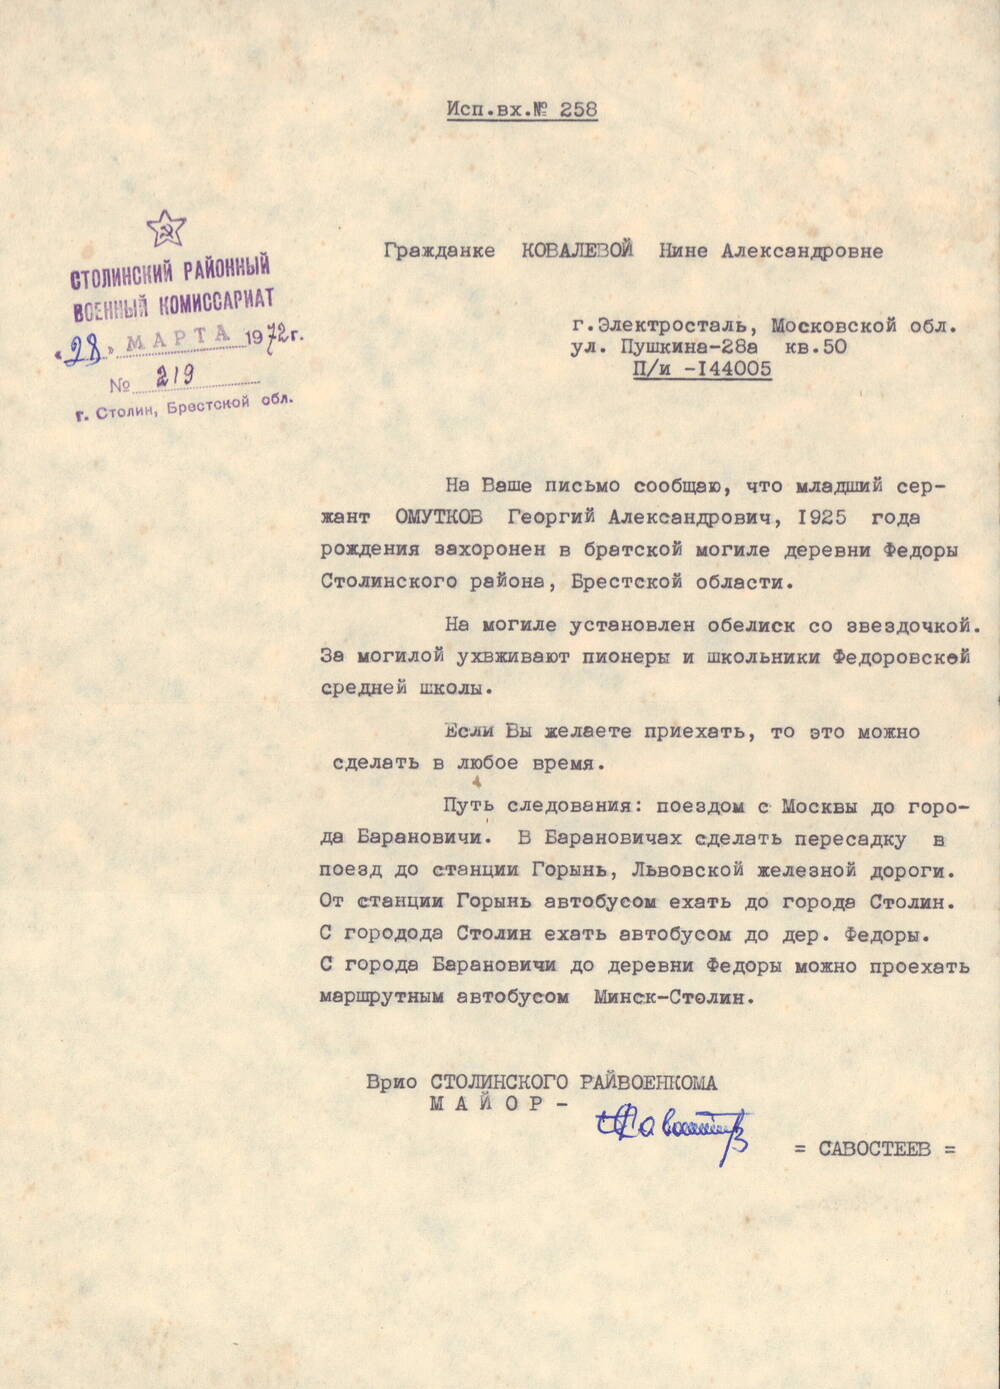 Письмо Ковалевой Нине Александровне, что Омутков Георгий Александрович, захоронен в братской могиле